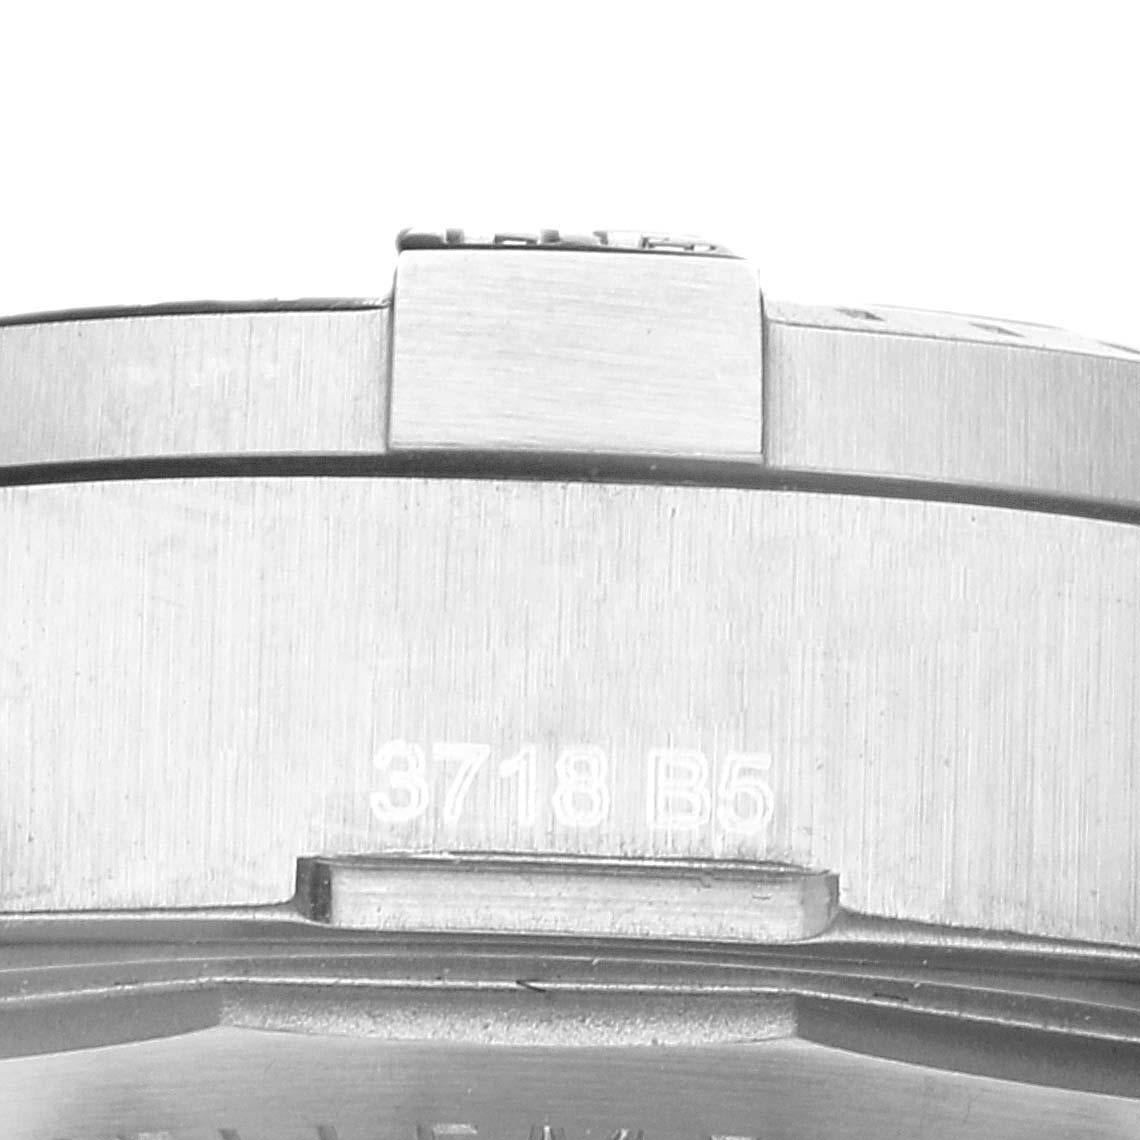 Breitling Colt Grey Dial Automatic Steel Herrenuhr A17313 Box Card. Automatisches Chronometerwerk mit Selbstaufzug. Gehäuse aus Edelstahl mit einem Durchmesser von 41.0 mm. Breitling-Logo auf einer Krone. Gehäusedicke: 10.70 mm. Einseitig drehbare